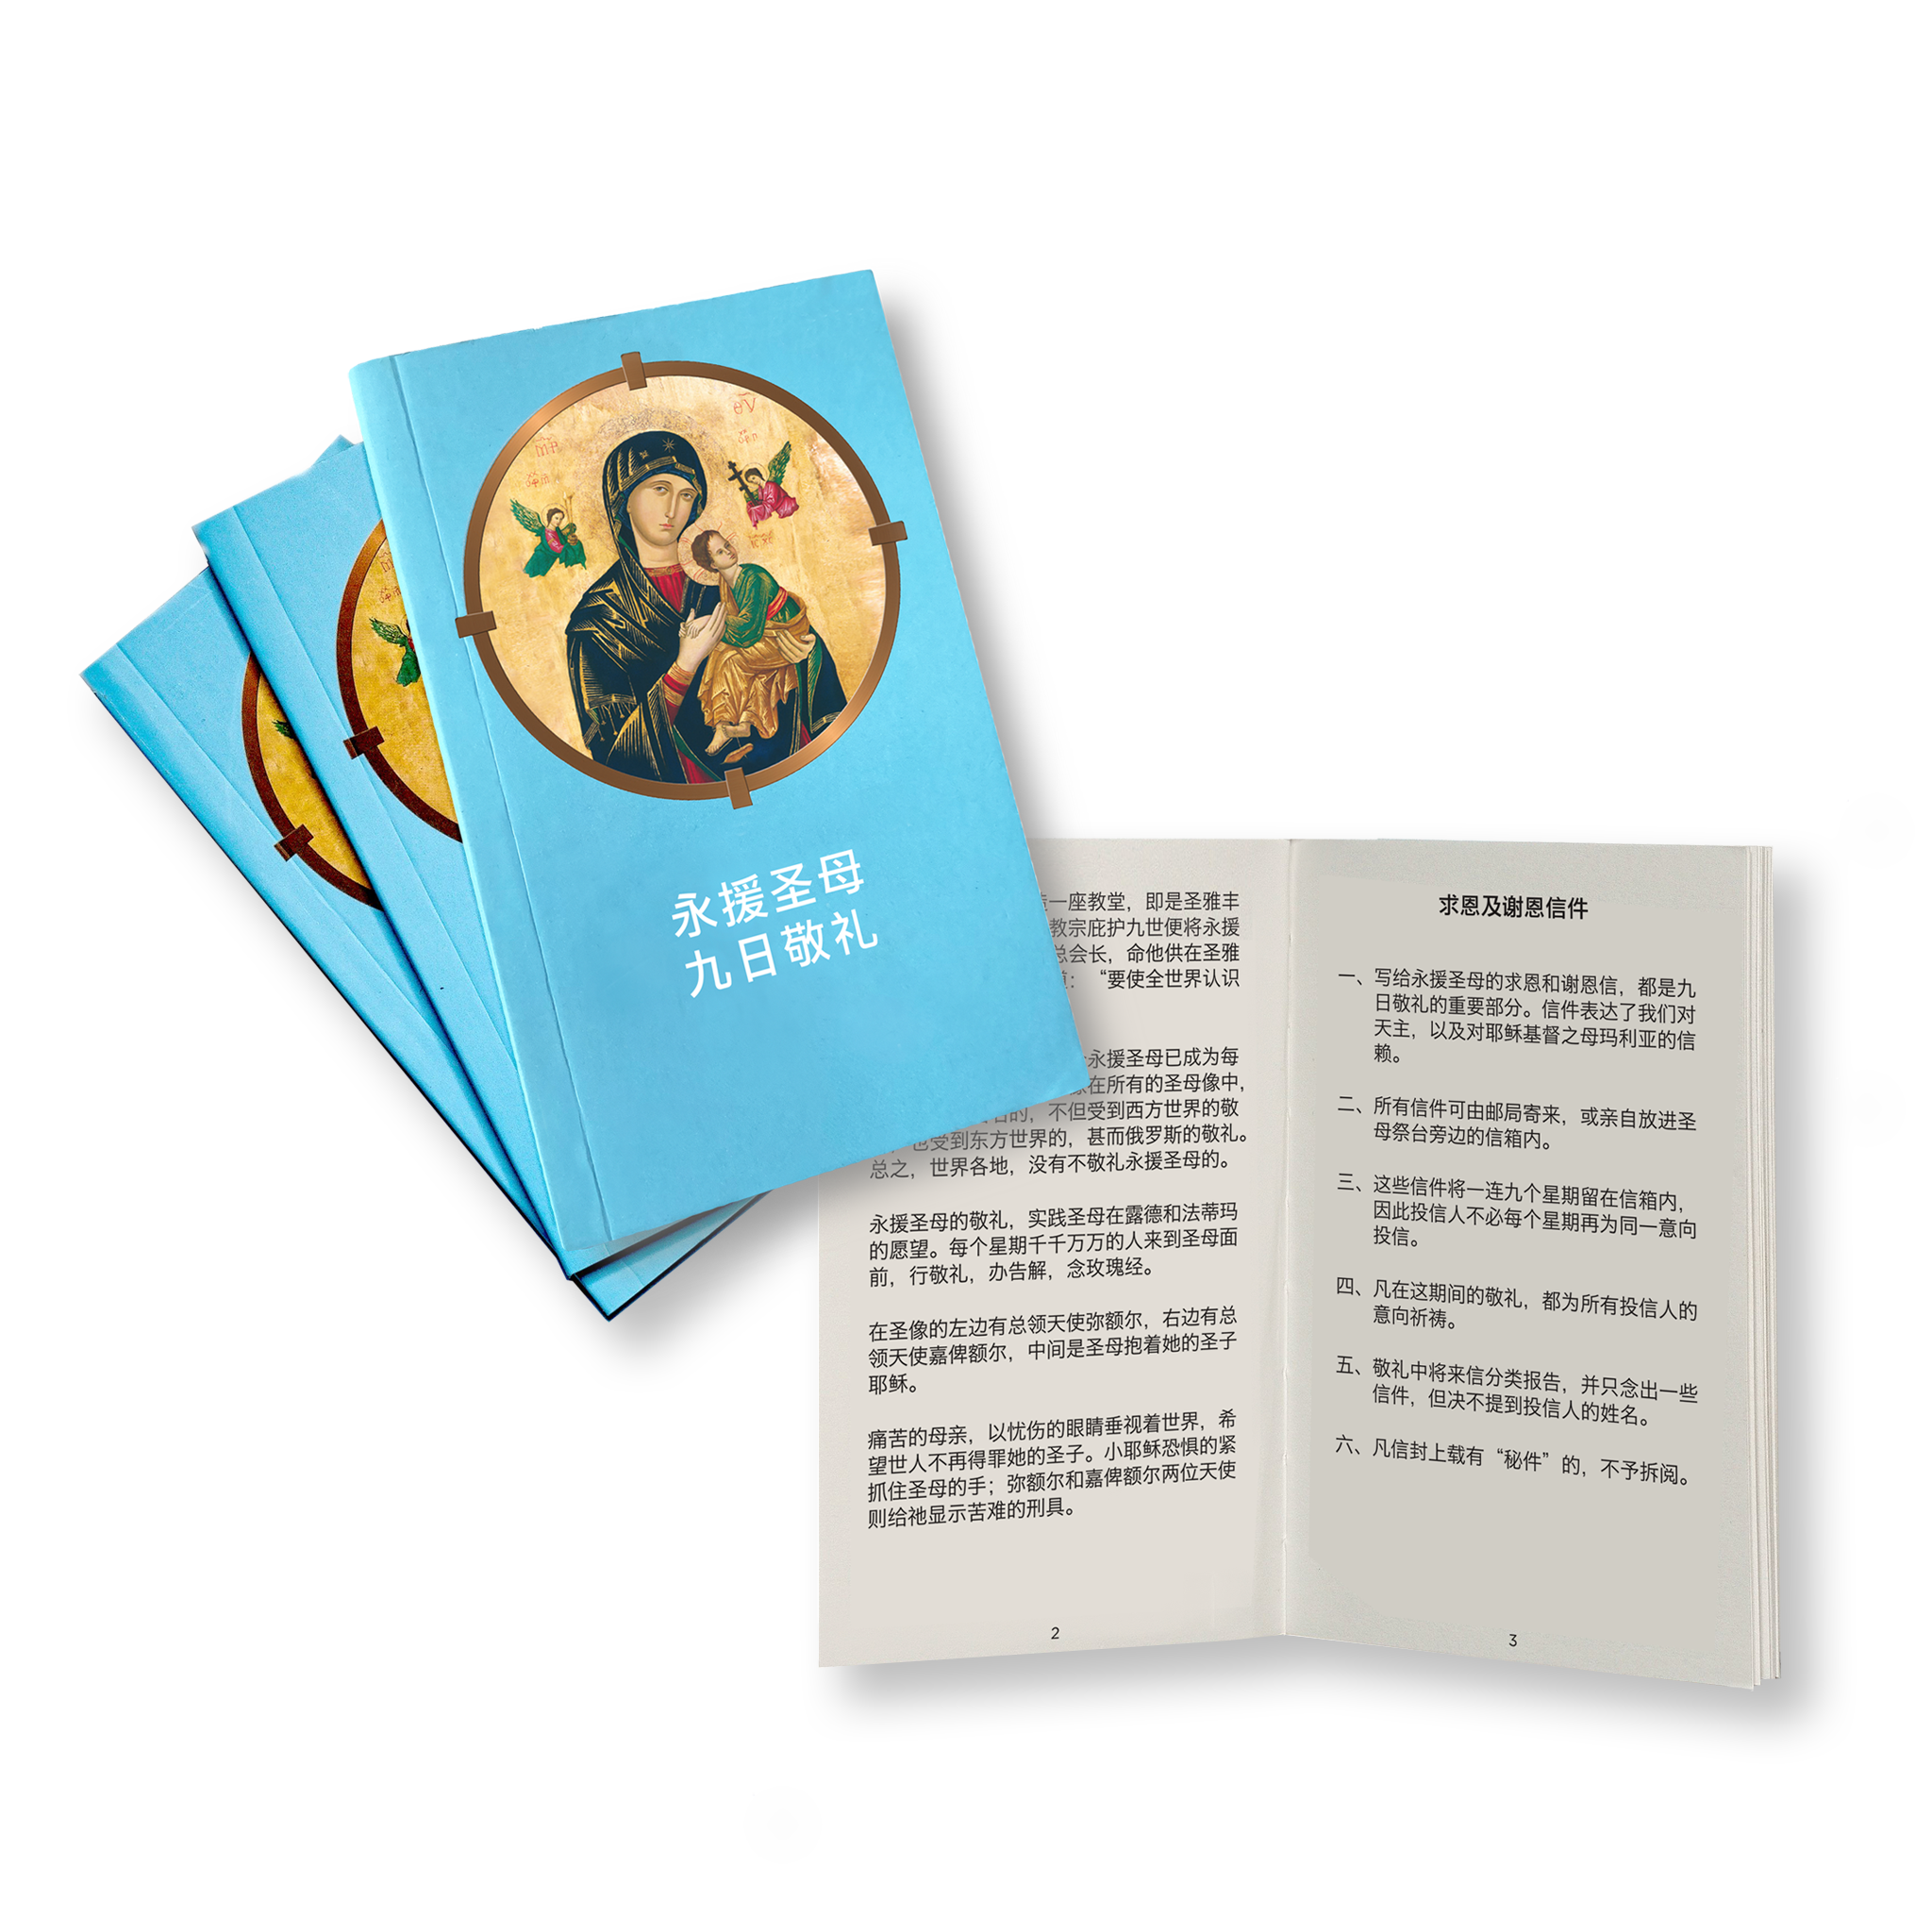 永援圣母敬礼手册 2020 版本 - NOVENA DEVOTION TO OUR MOTHER OF PERPETUAL HELP BOOKLET (Mandarin 2020 edition)